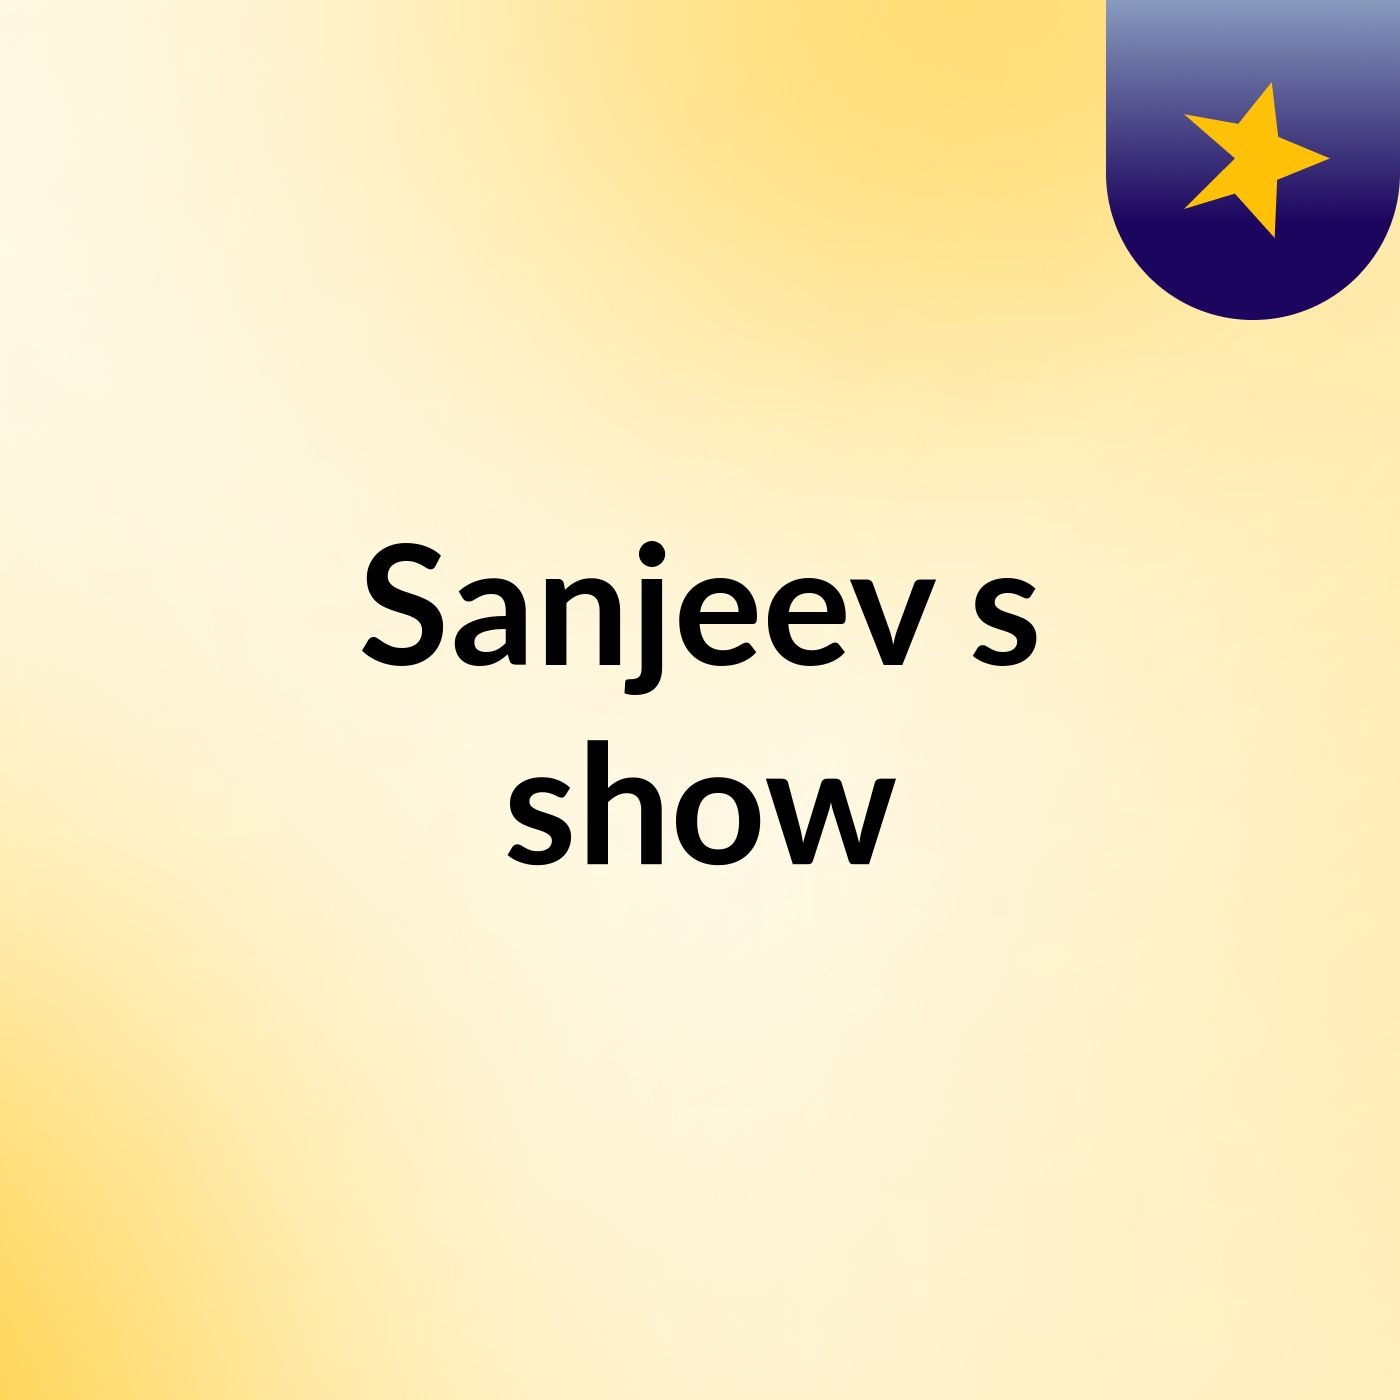 Sanjeev's show